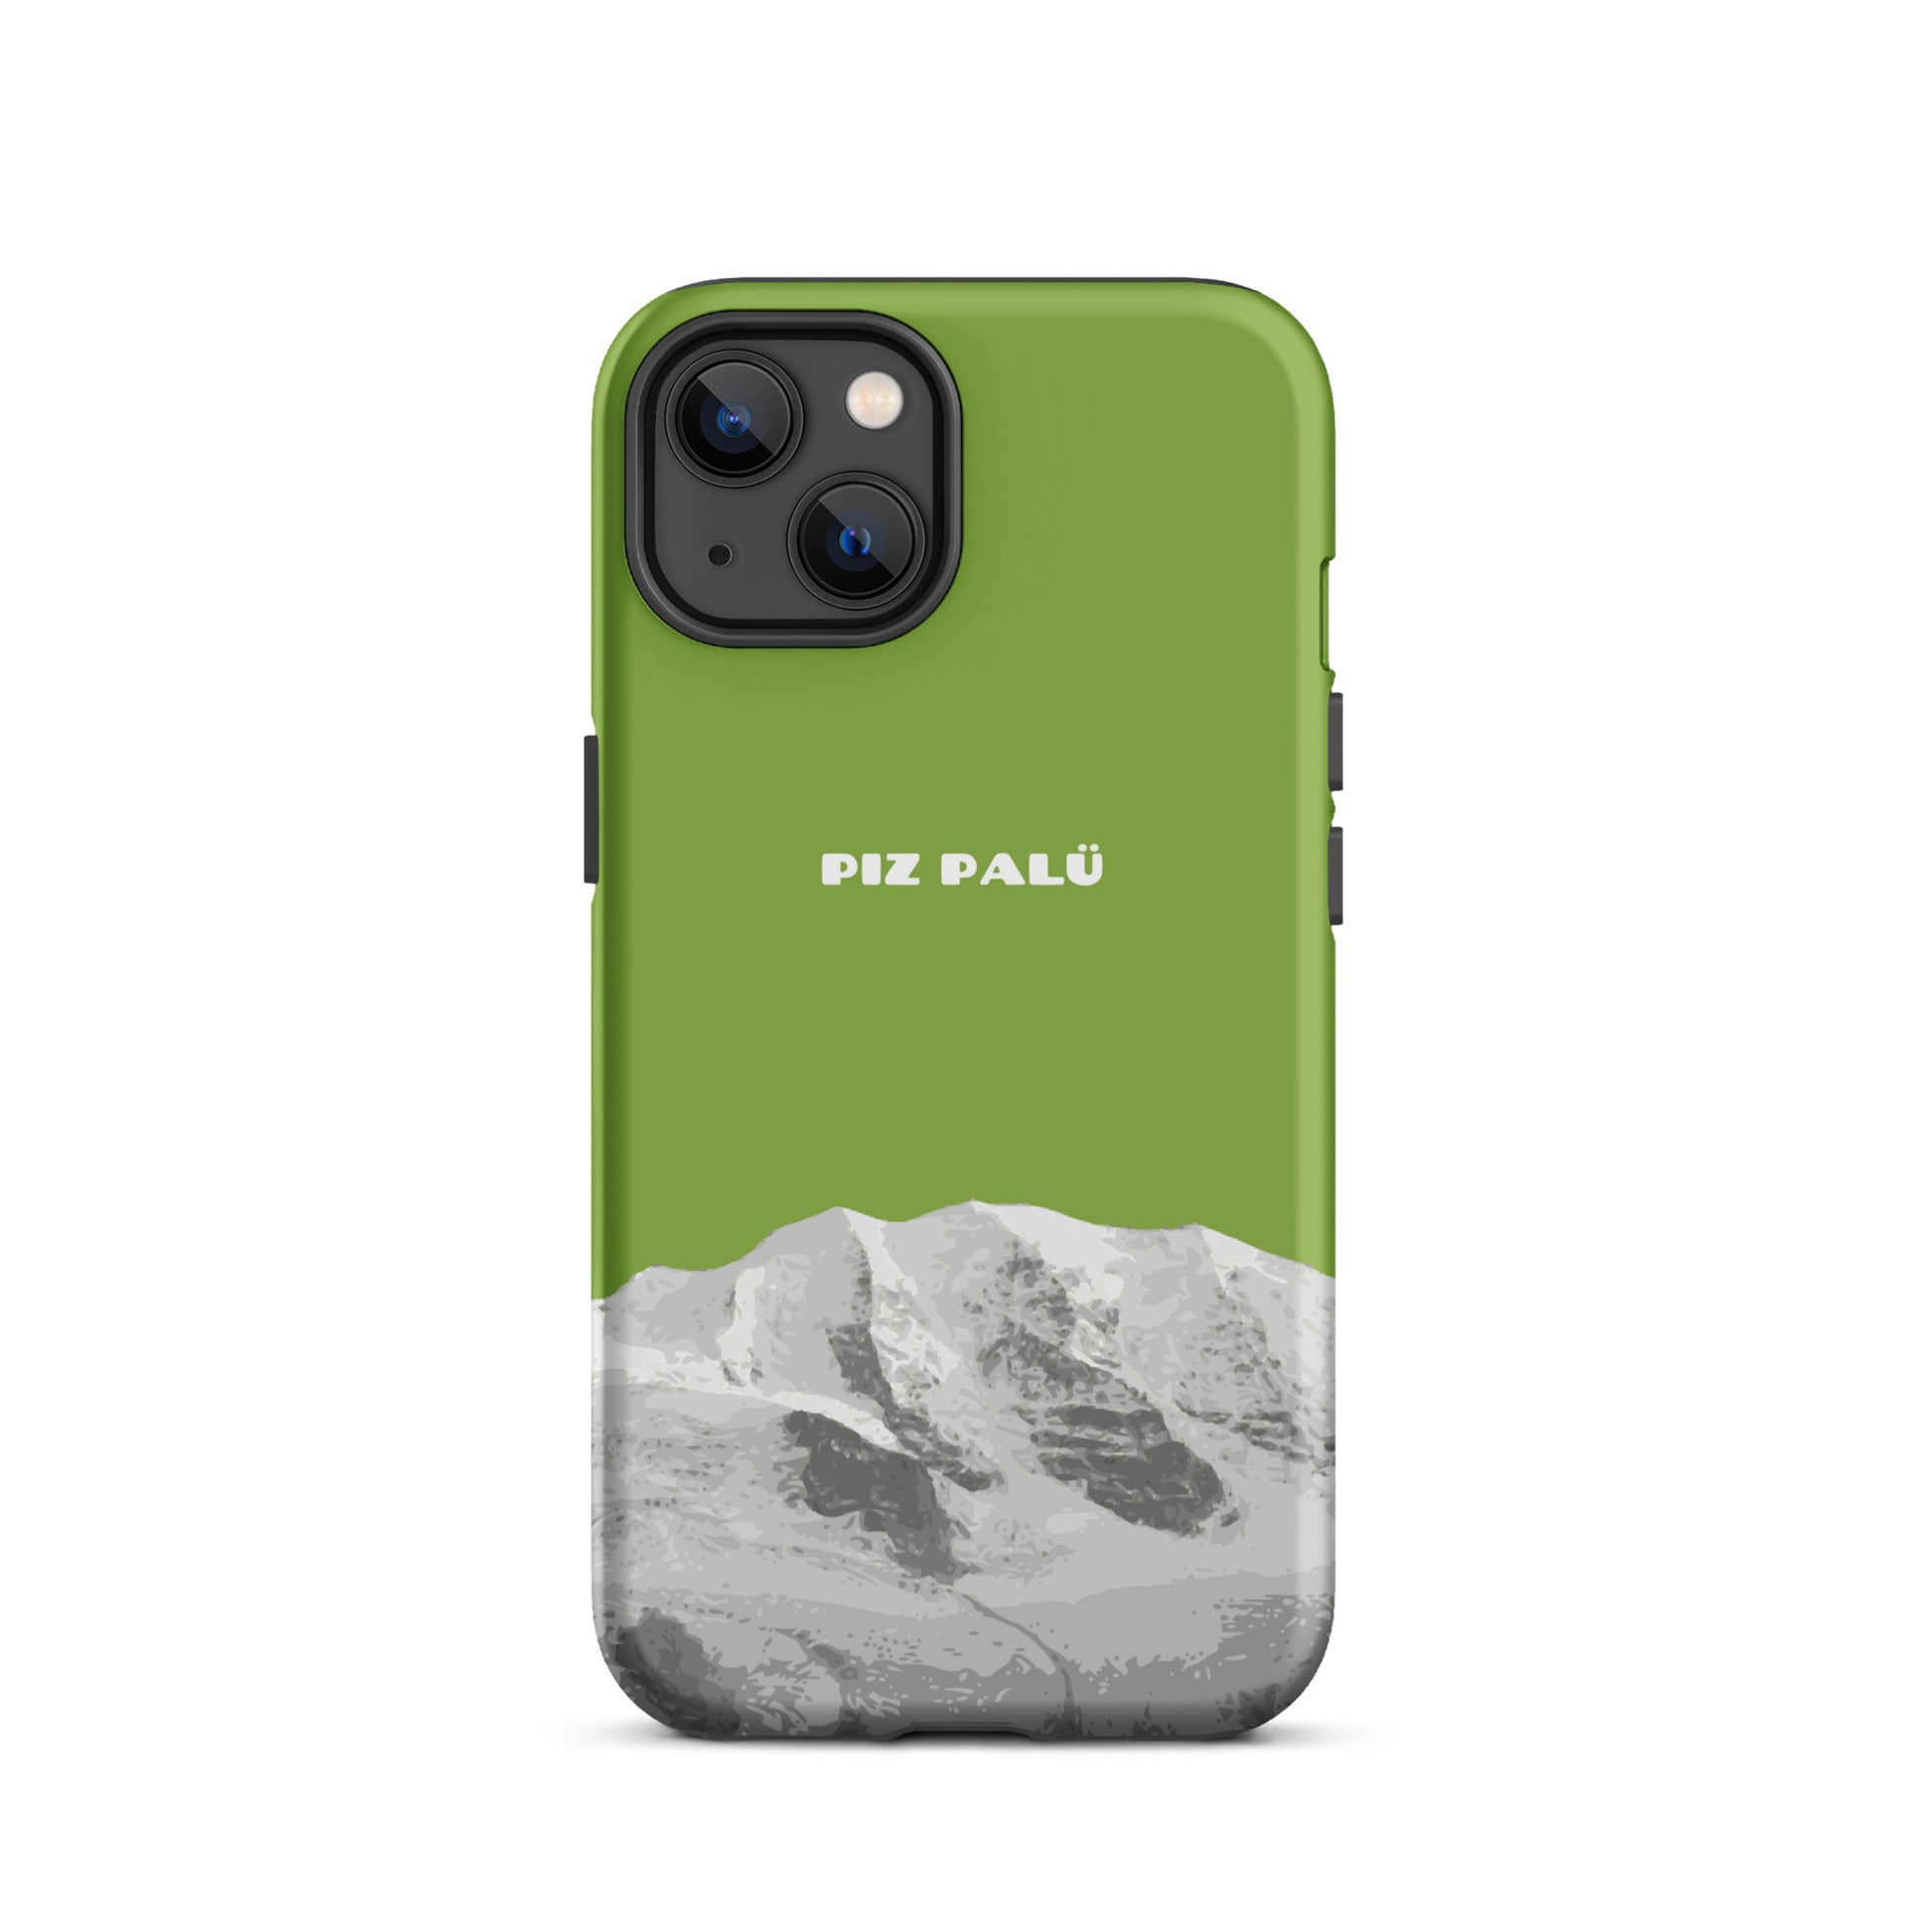 Hülle für das iPhone 13 von Apple in der Farbe Gelbgrün, dass den Piz Palü in Graubünden zeigt. 